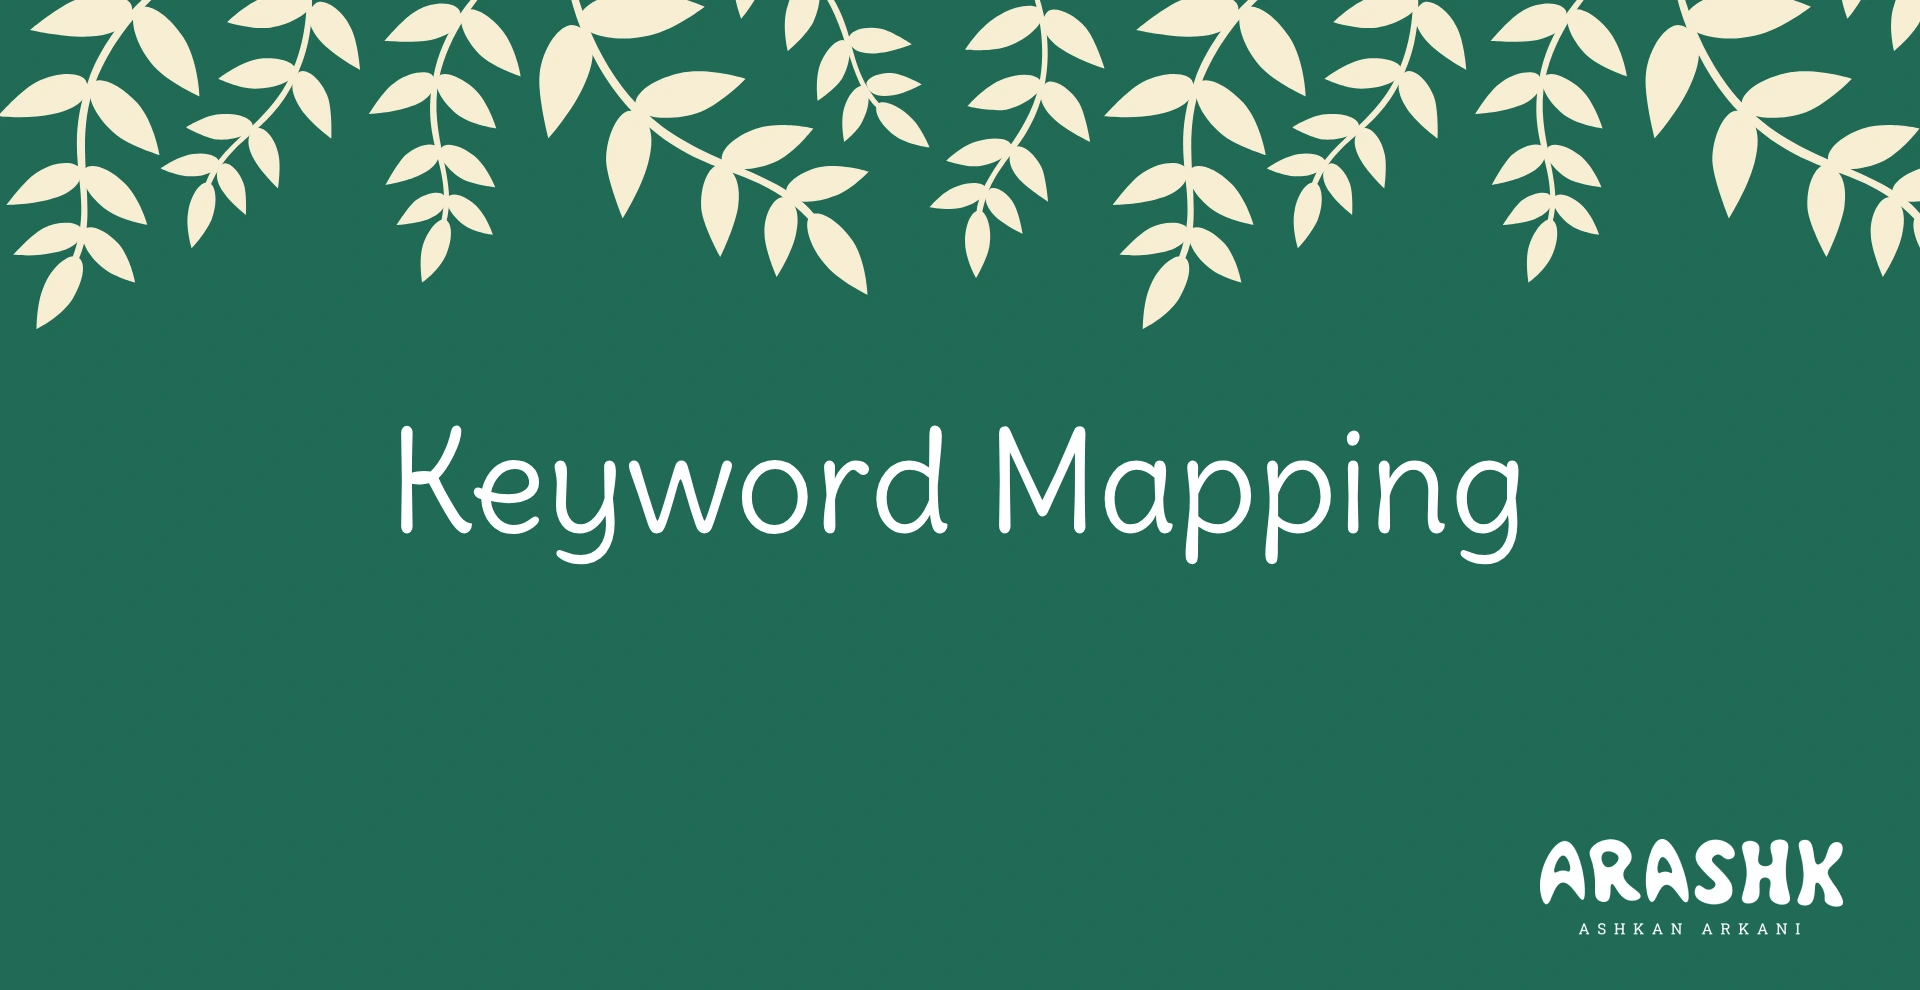 کیورد مپینگ (keyword mapping) یا نقشه کلمات کلیدی